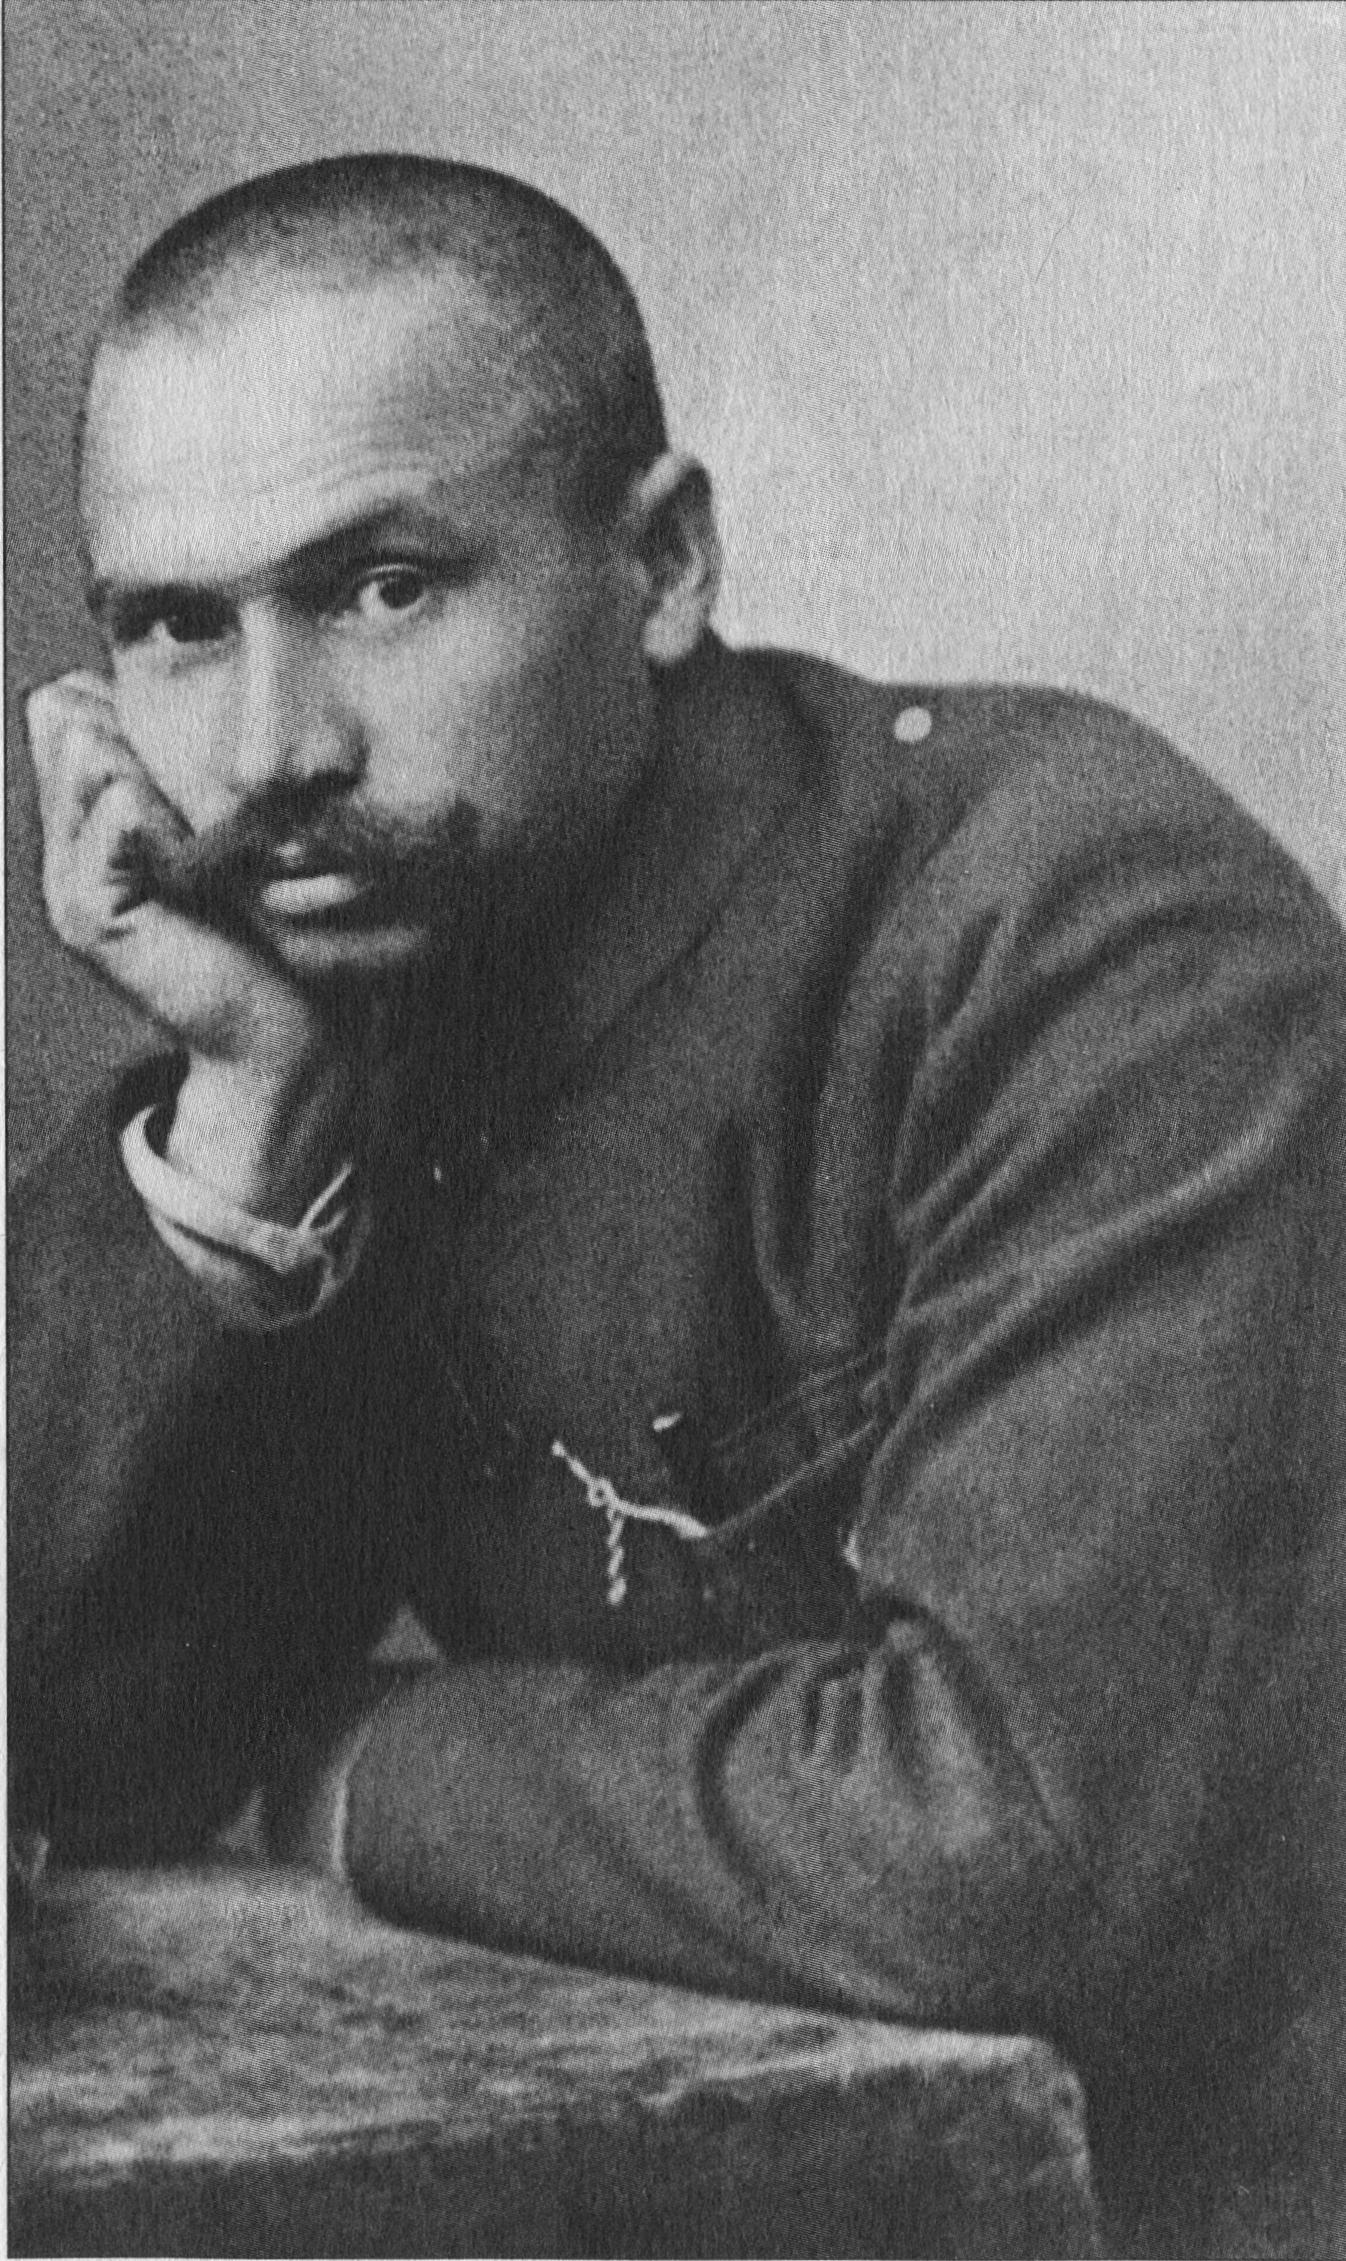 Γκαβρίλ  Ίλιτς  Μιάσνικοφ ( Gavril  Ilyich Myasnikov) . 25-02-1889  ως και  16-11-1945